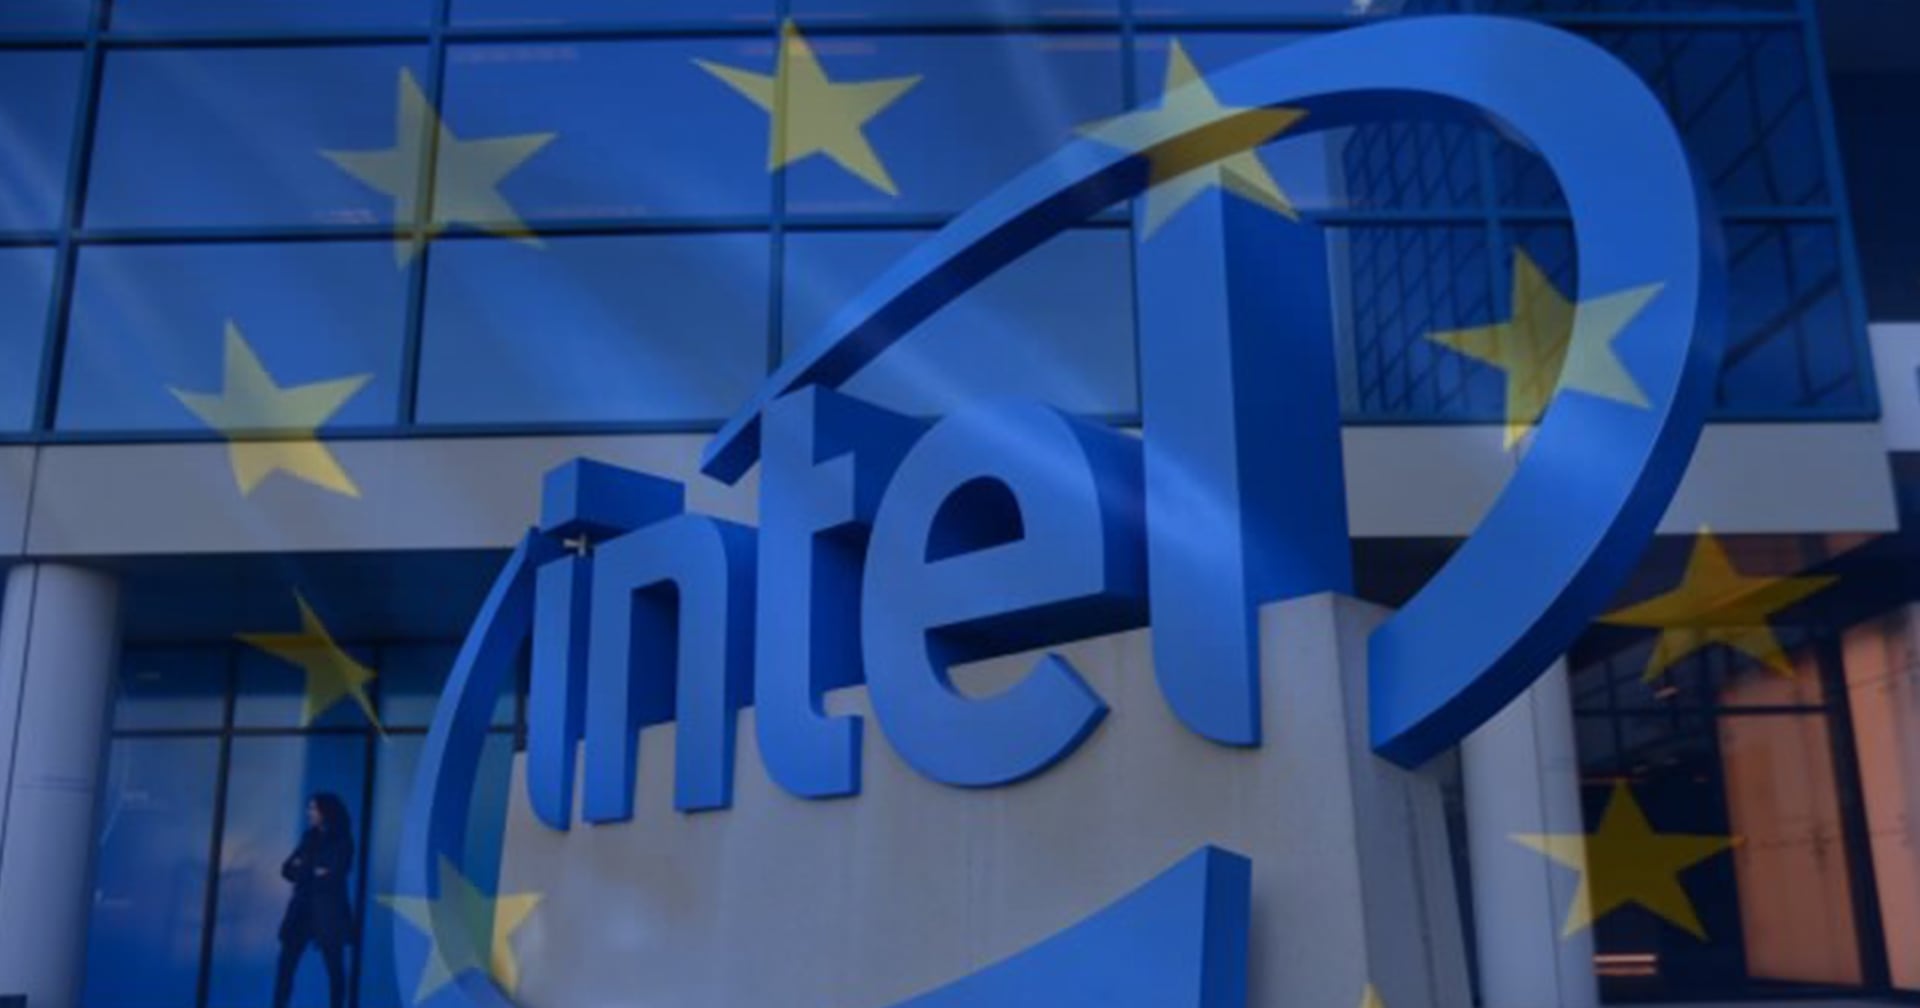 ผู้บริหาร Intel ลุยยุโรปเพื่อหาทางสร้างโรงงานผลิตชิปเพิ่ม